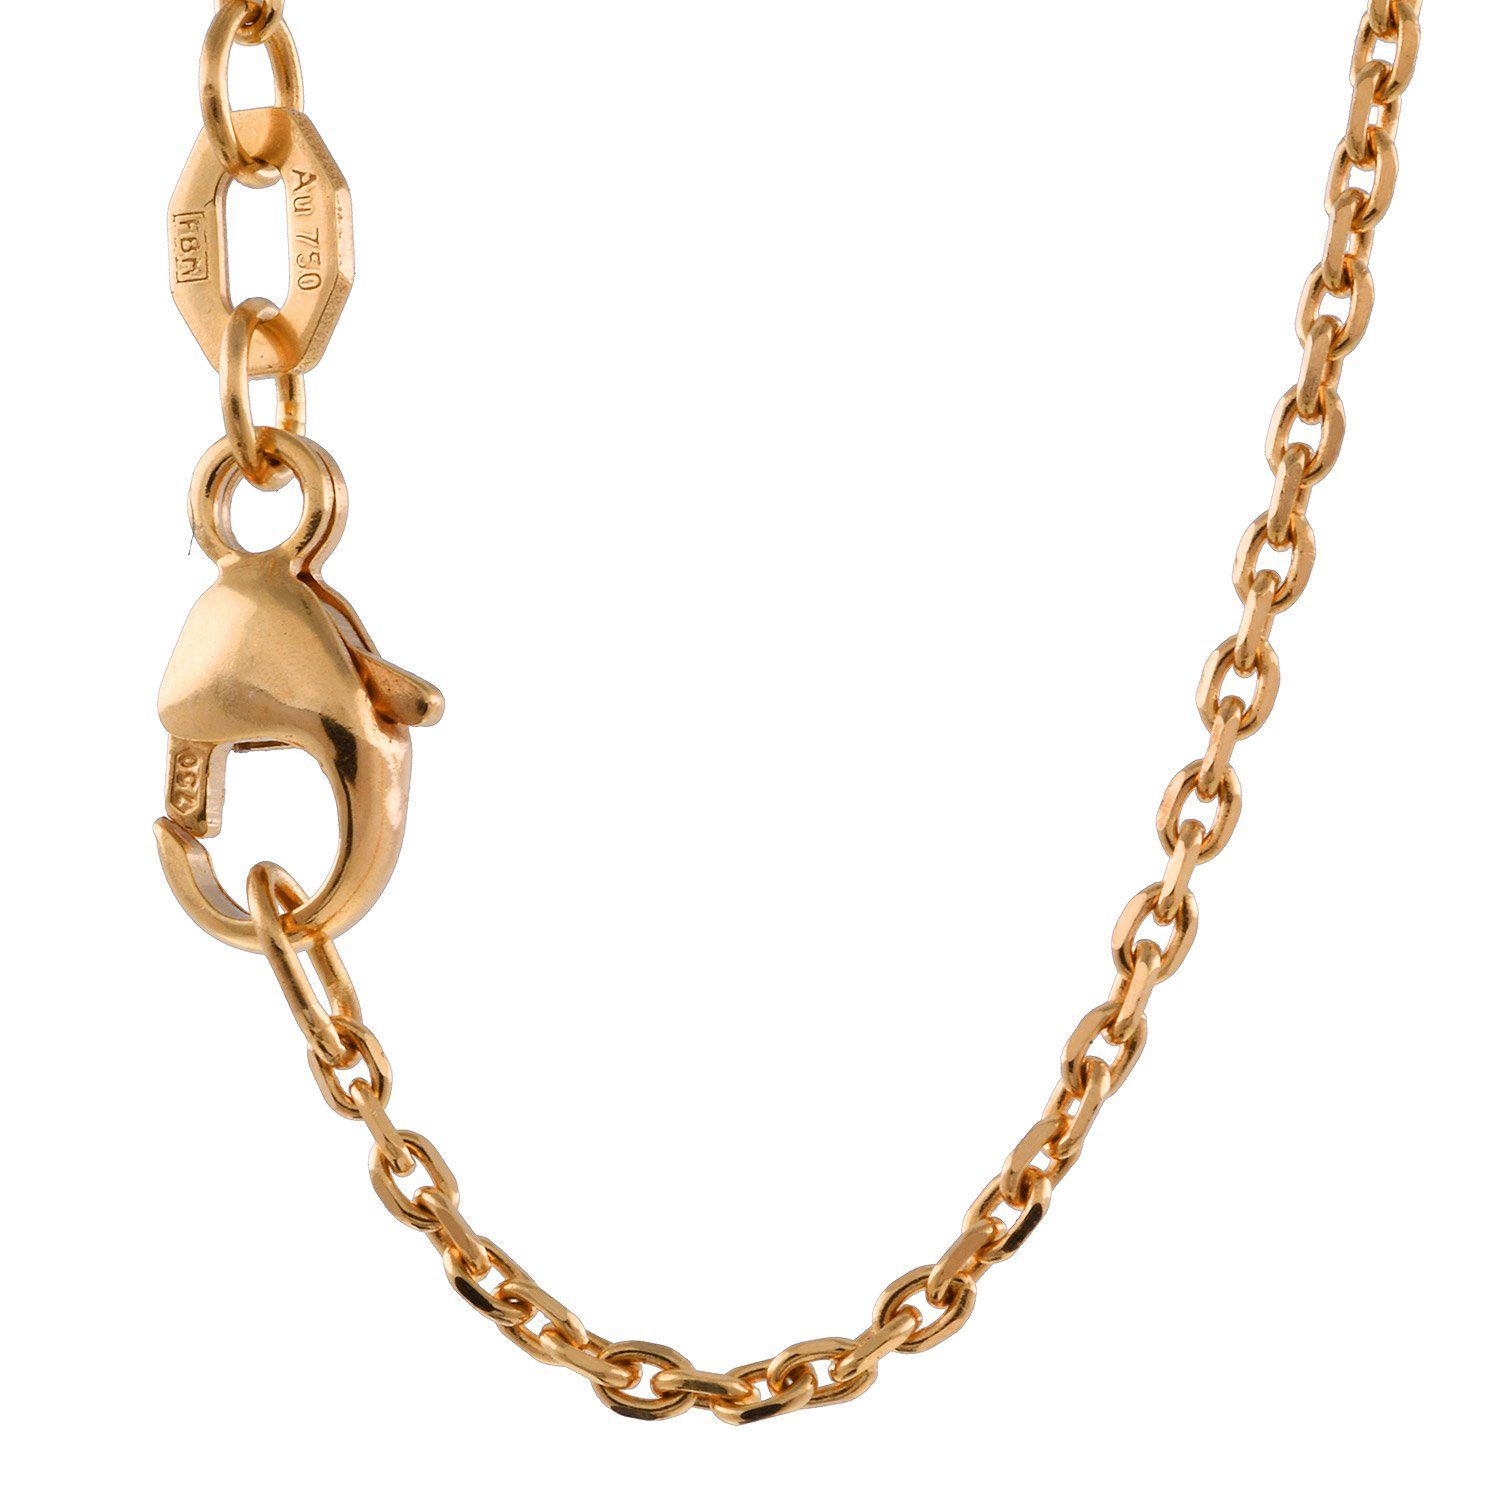 Herren Schmuck HOPLO Goldkette 1,3 mm 50 cm 750 - 18 Karat Gold Halskette Ankerkette diamantiert massiv Gold hochwertige Goldket